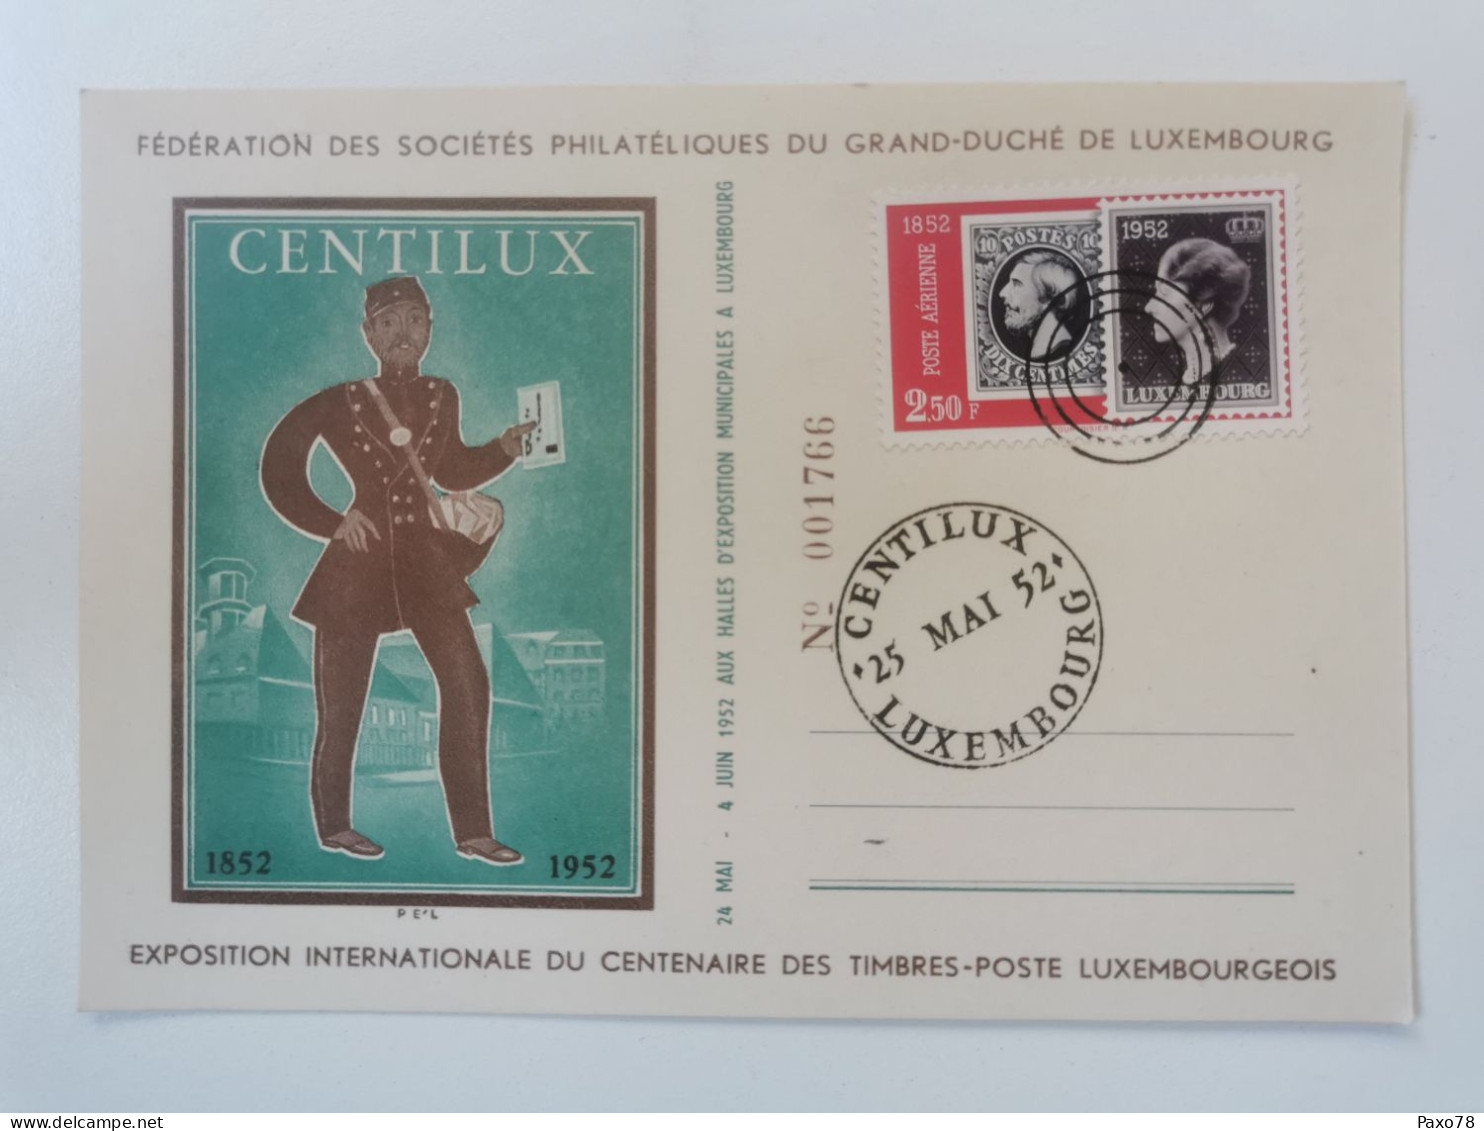 Centilux 1955 - In Gedenken An